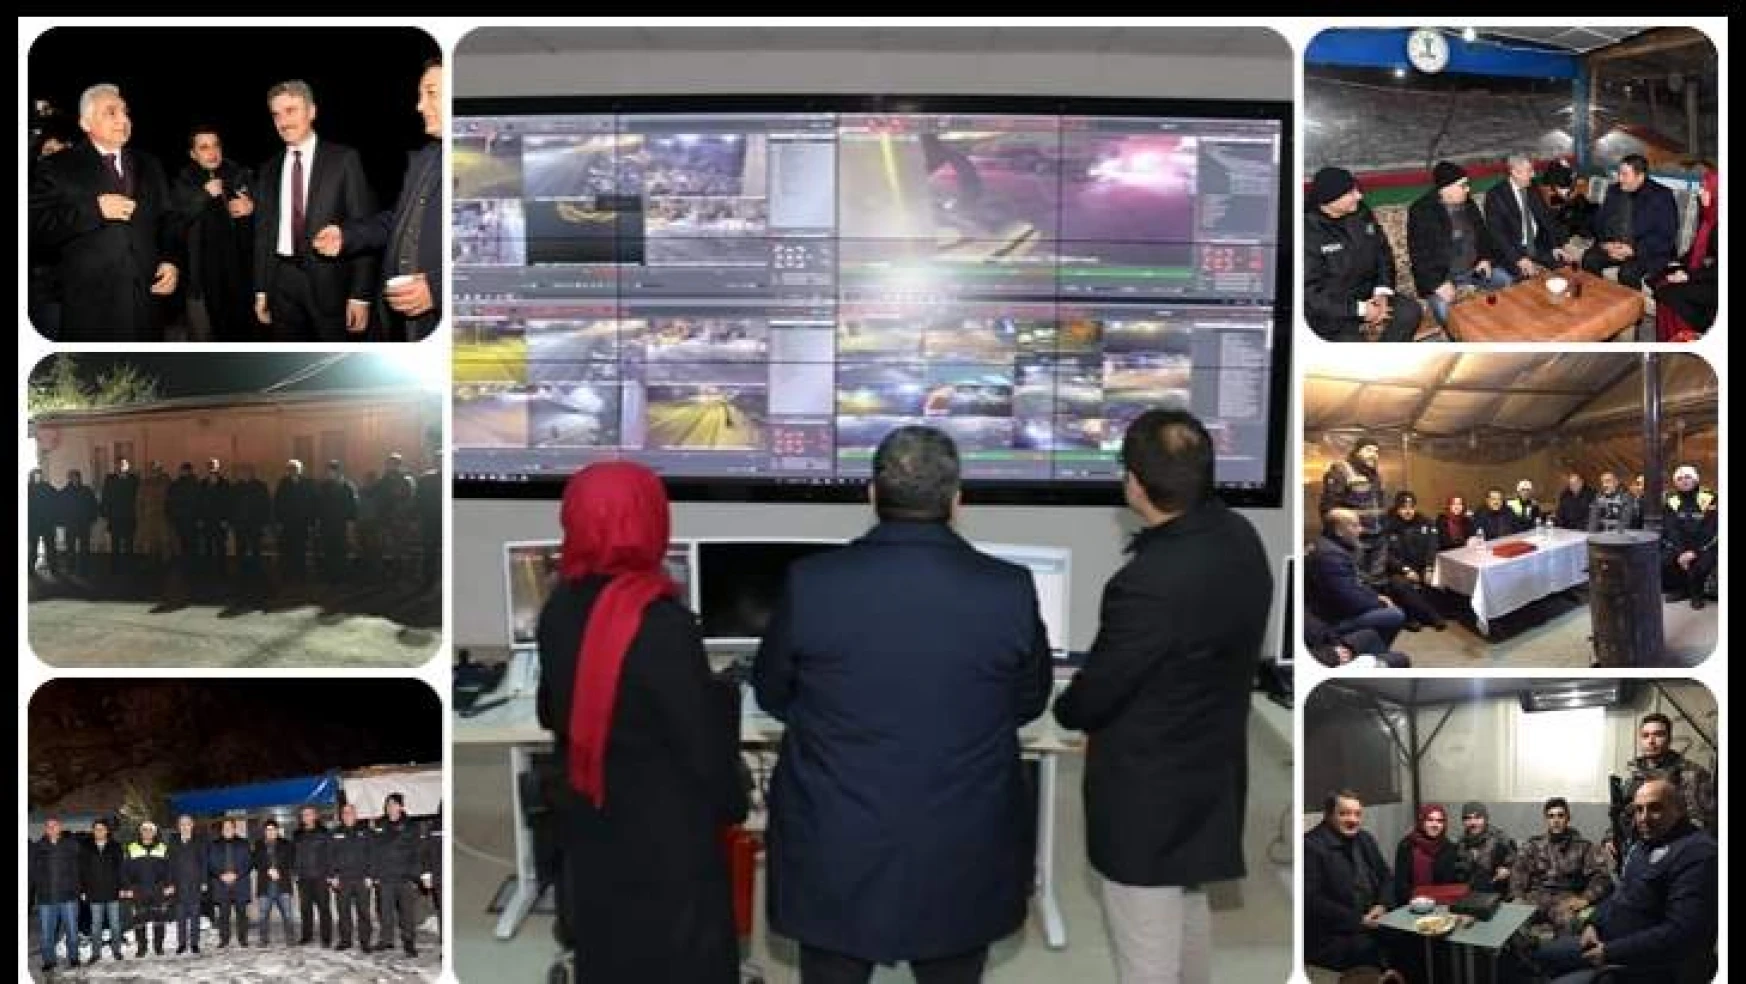 Fendoğlu 2019 Yılının İlk Dakikalarında Güvenlik Noktalarına Ziyaret Gerçekleştirdi.